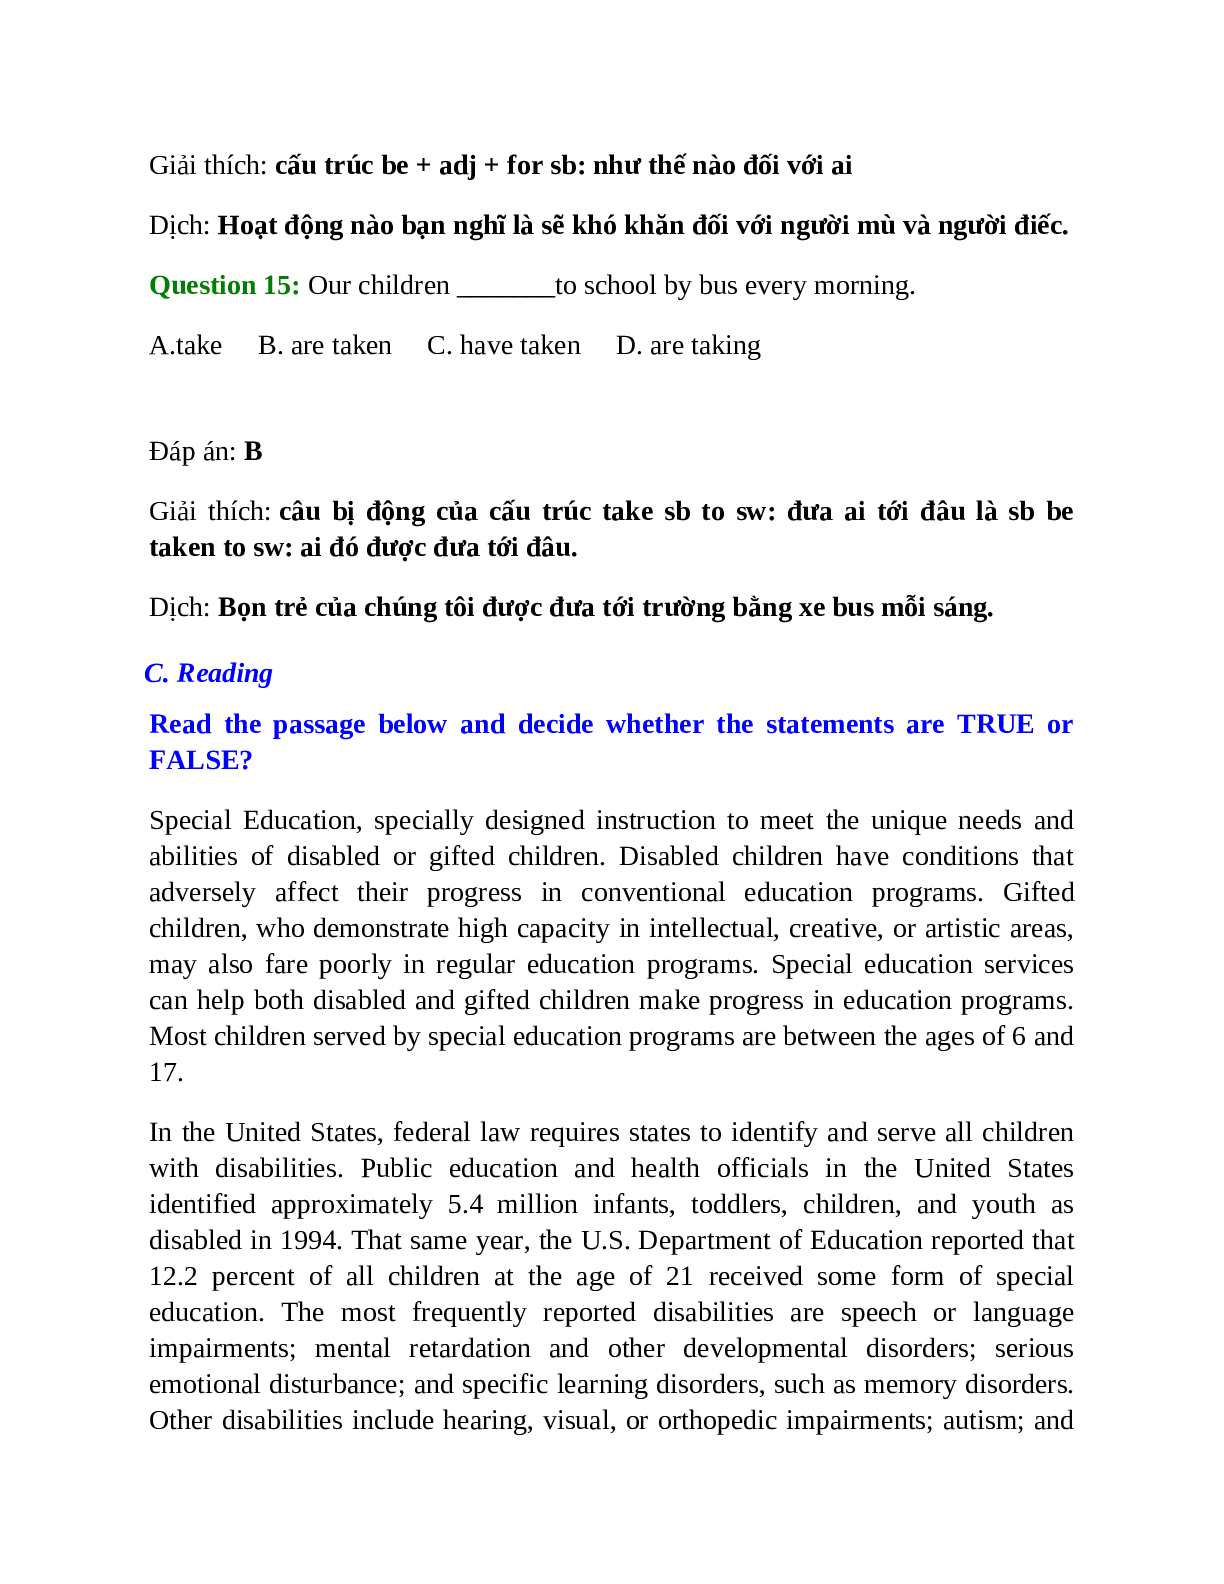 Trắc nghiệm Tiếng Anh 10 Unit 4 có đáp án: Special Education (trang 8)